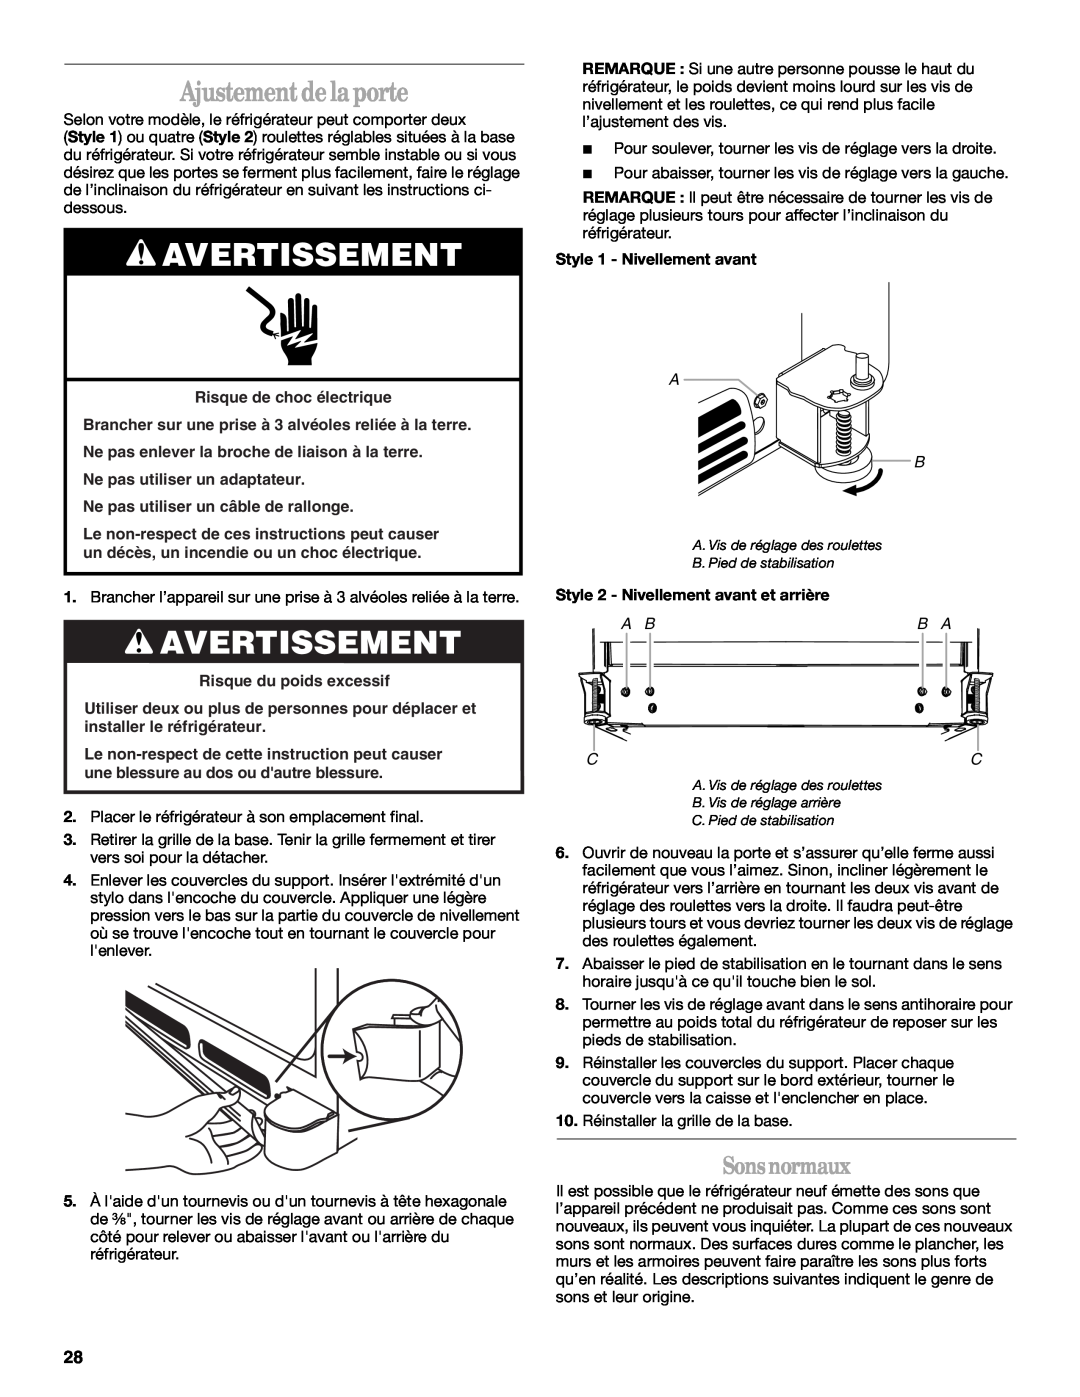 Whirlpool GB2SHDXPB00 manual Sonsnormaux, Avertissement, Ajustement de laporte, Risque de choc électrique, A Bb A Cc 